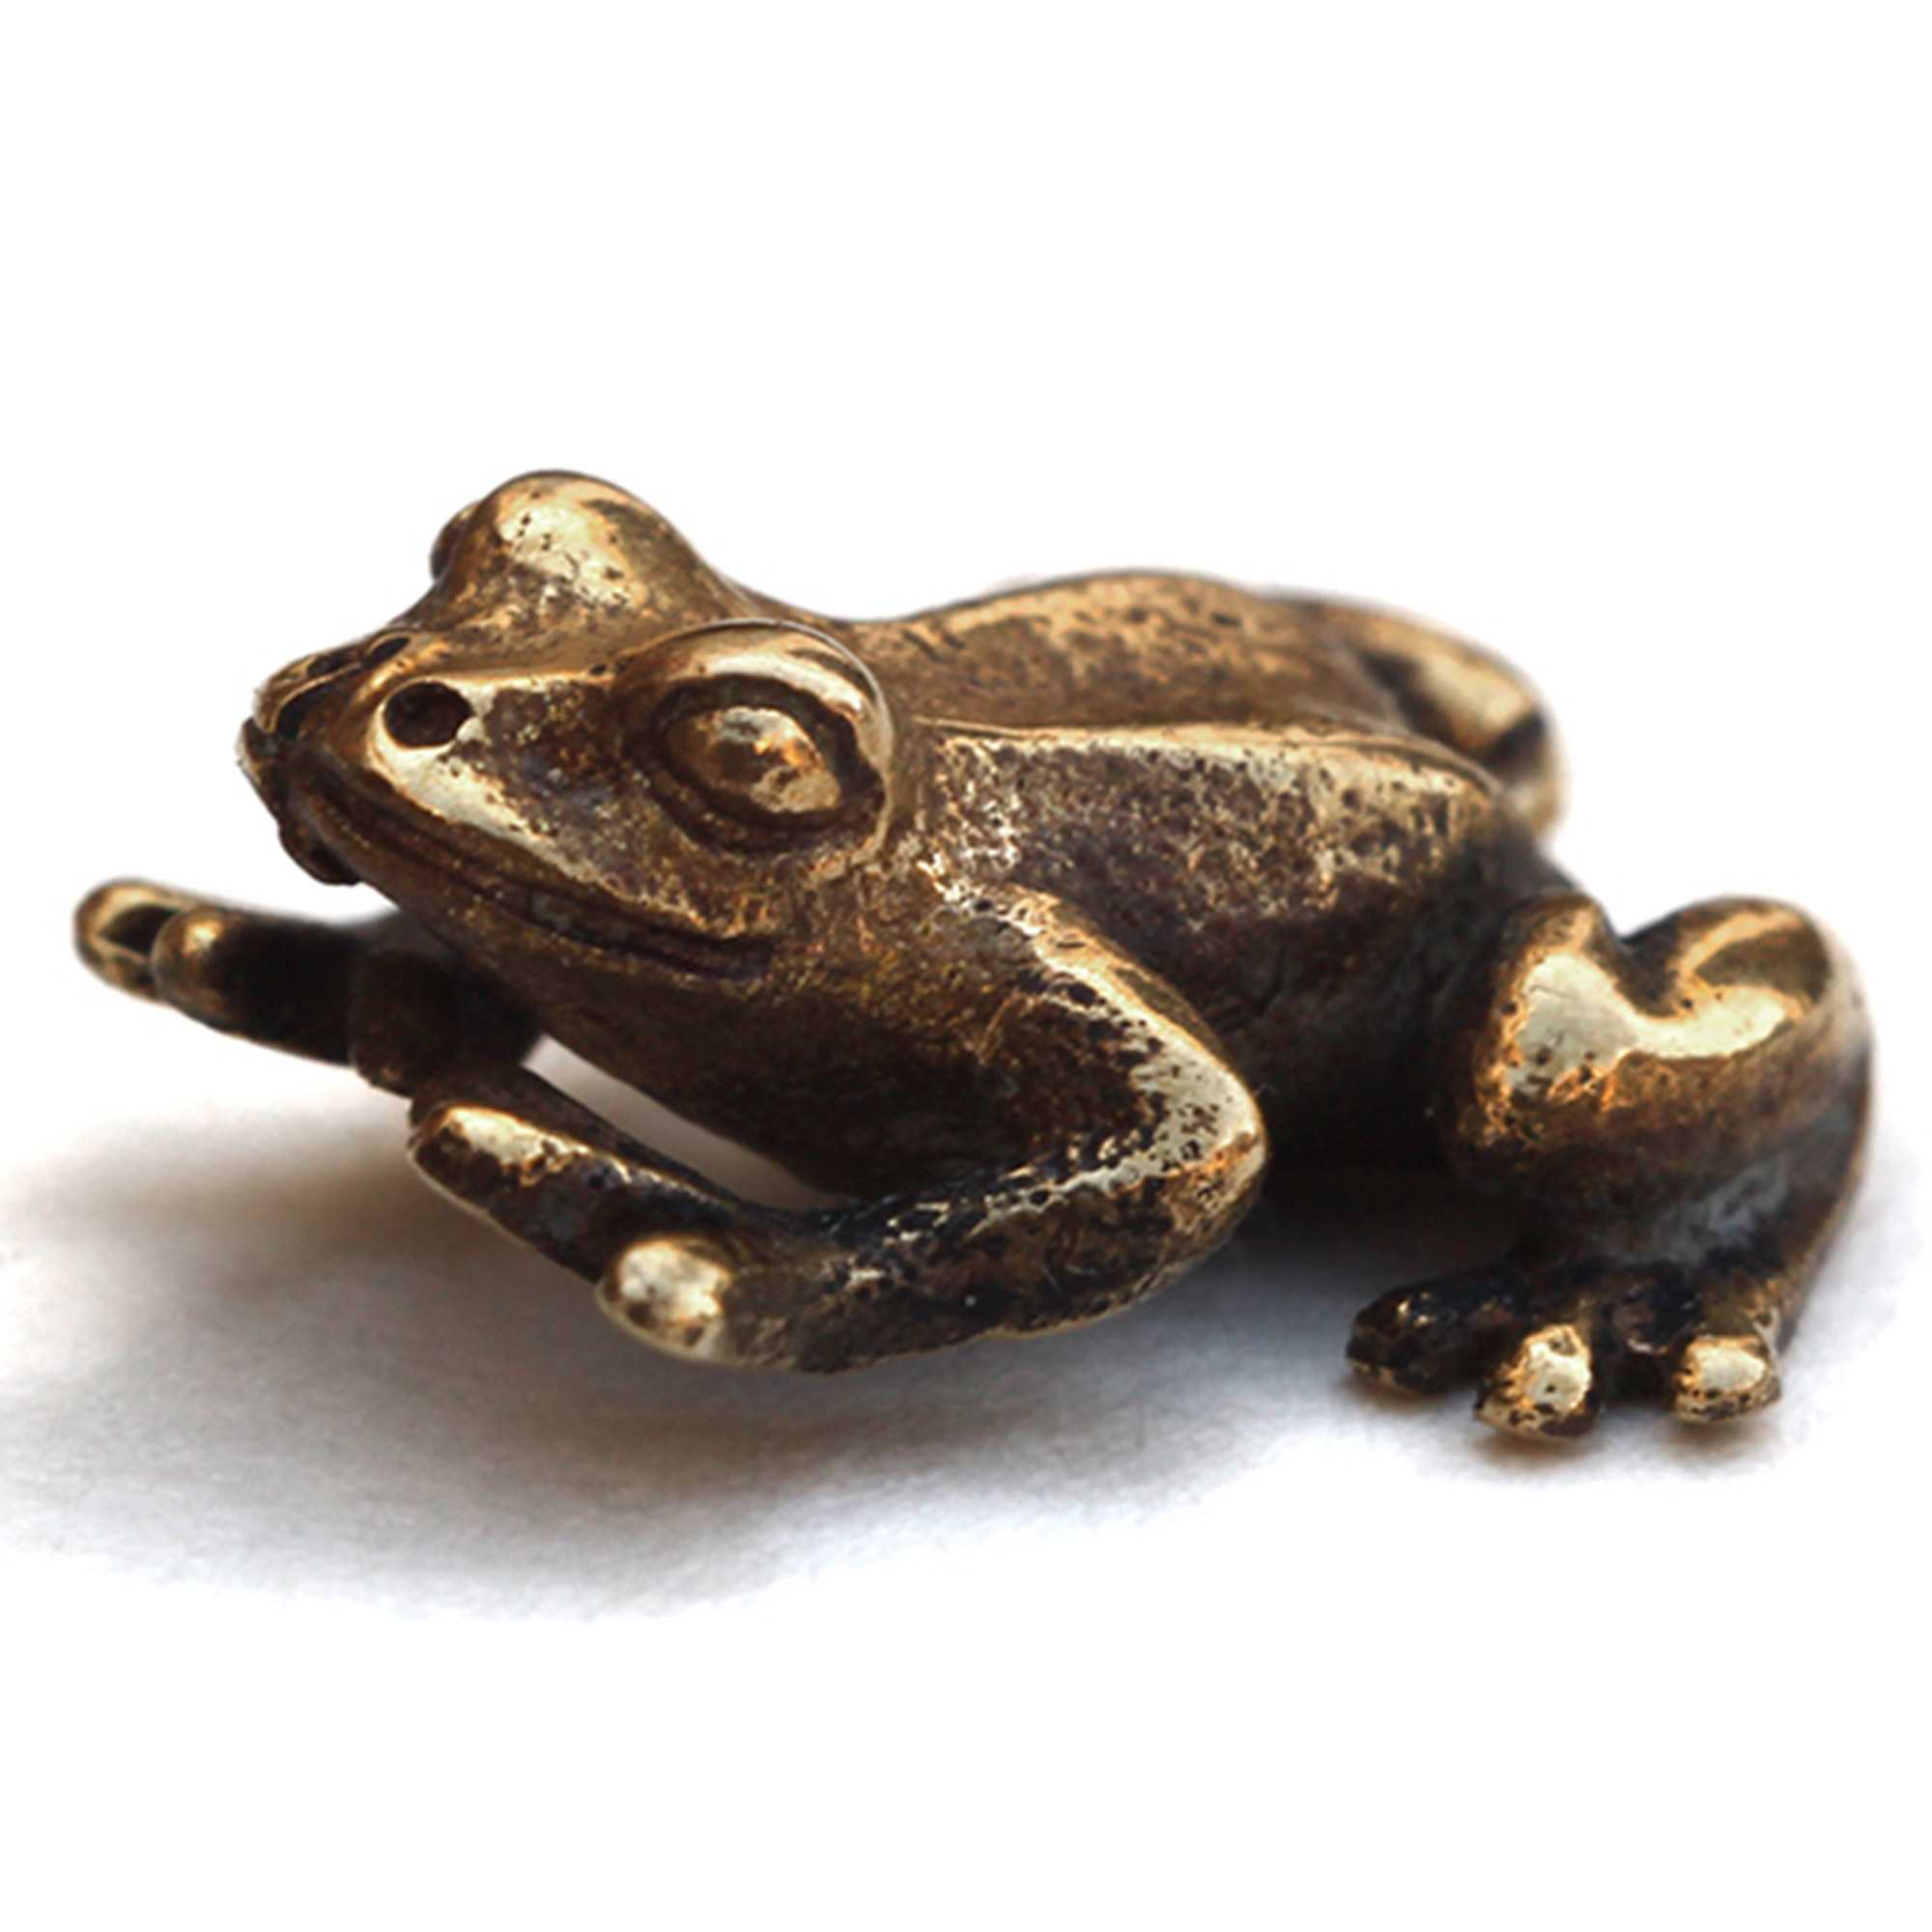 Денежная жаба - описание оберега, история, правила использования